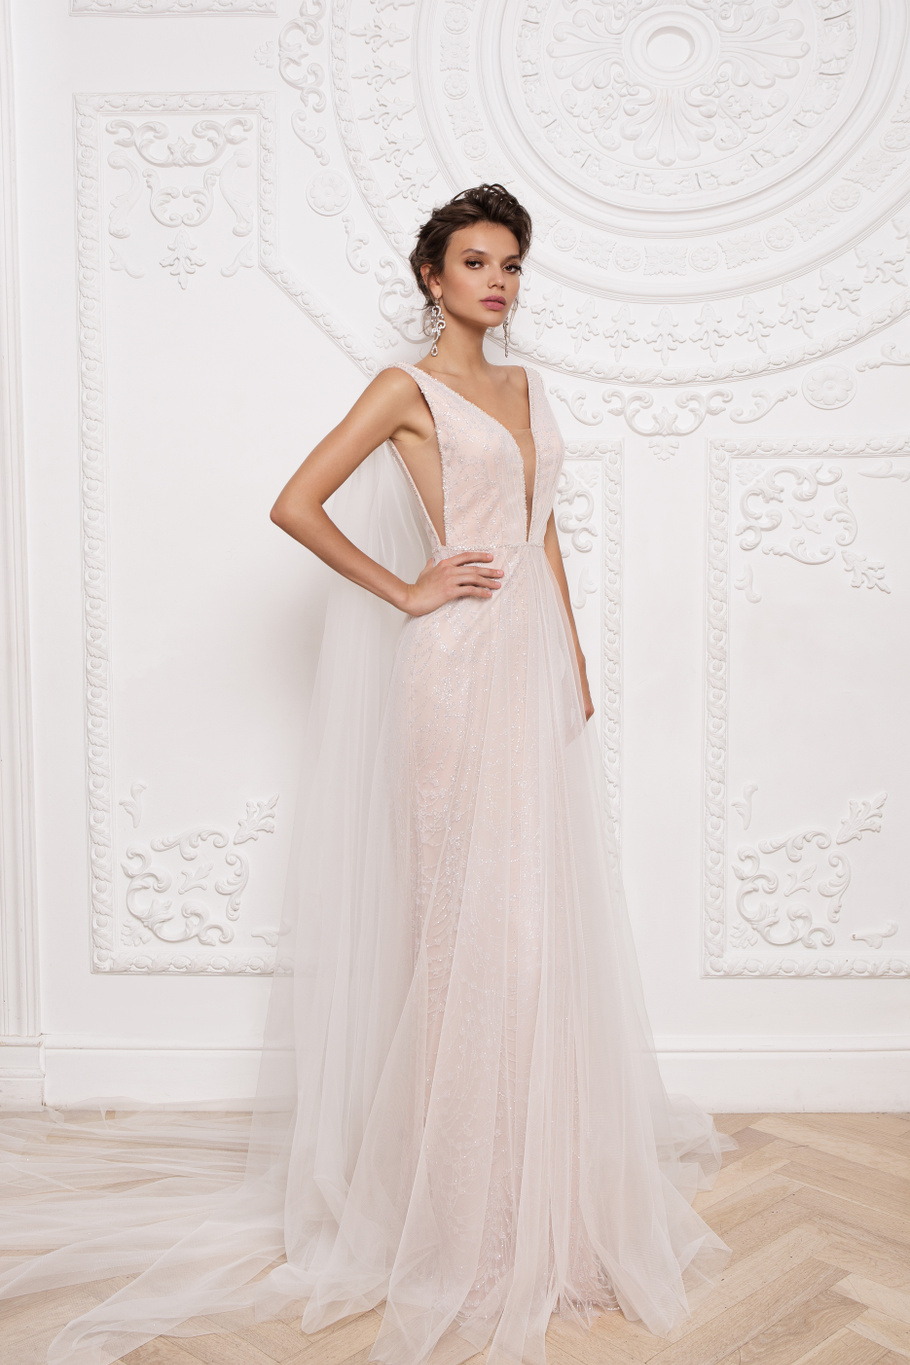 Купить свадебное платье «Прадин» Мэрри Марк из коллекции 2020 года в Екатеринбурге